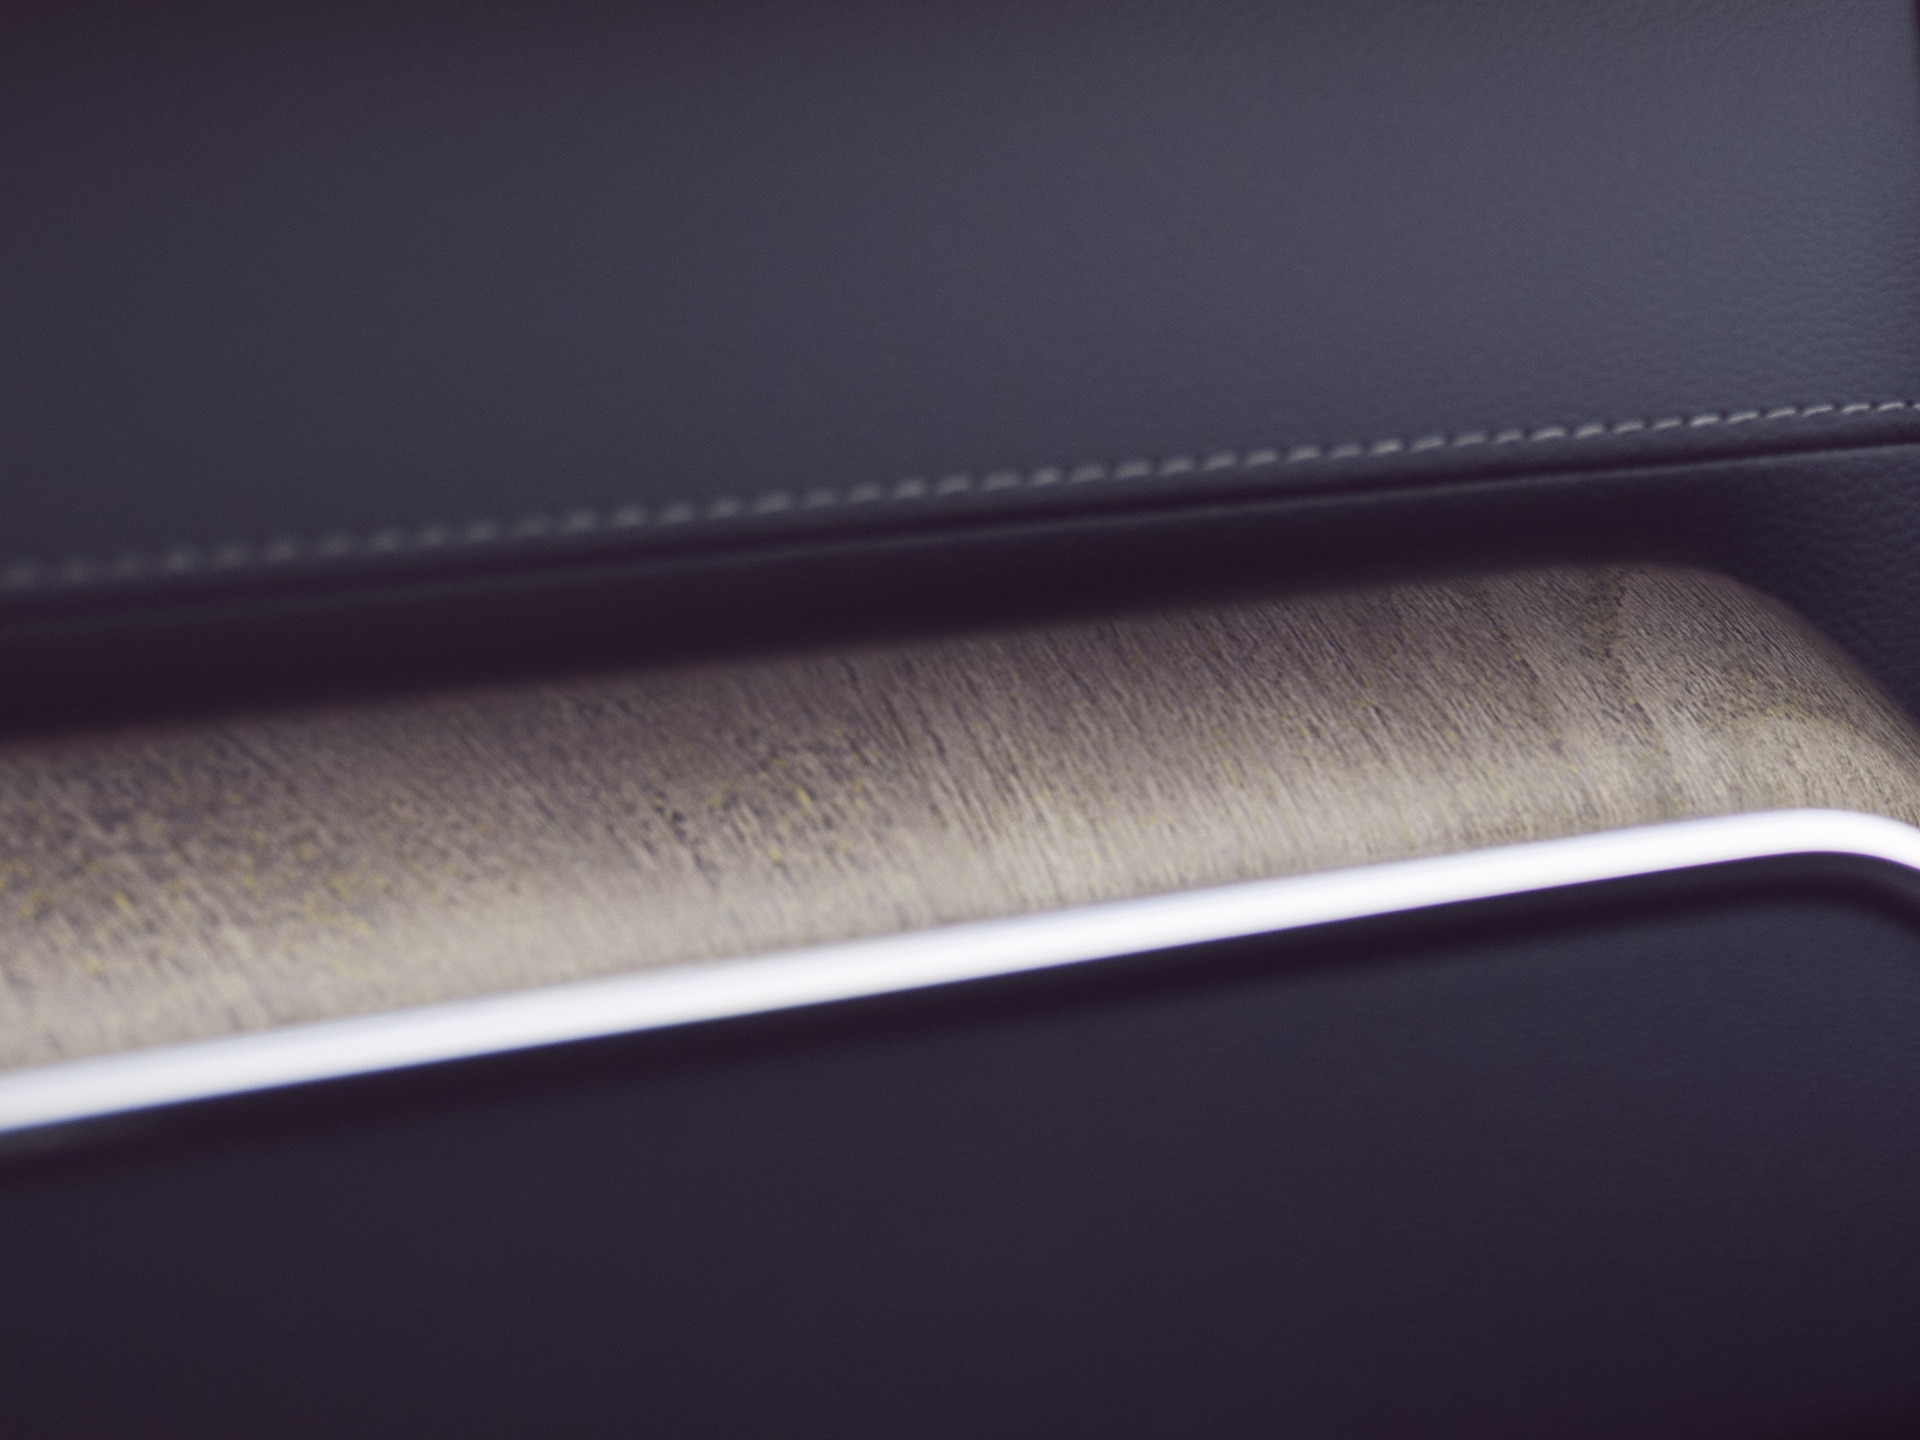 Les incrustations décoratives en bois de la Volvo XC60 apportent une touche naturelle.